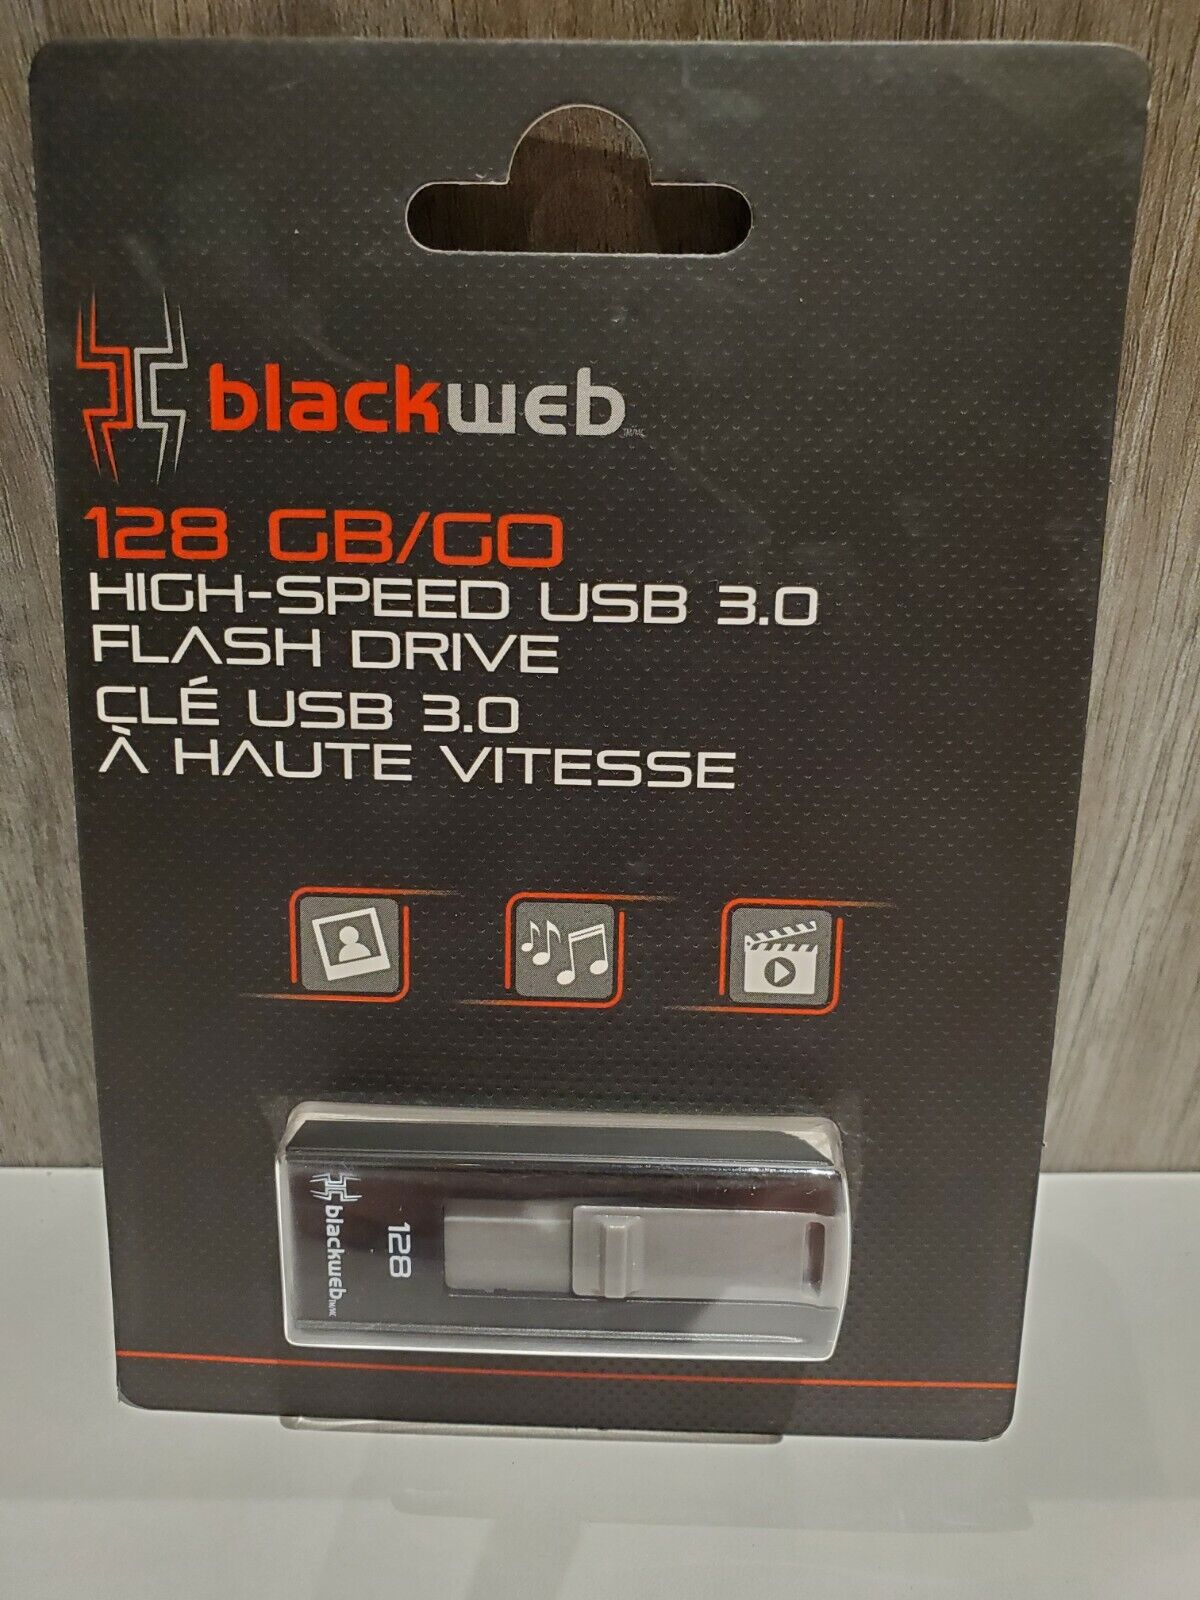 Blackweb 128GB USB 3.0 Flash Drive - NEW